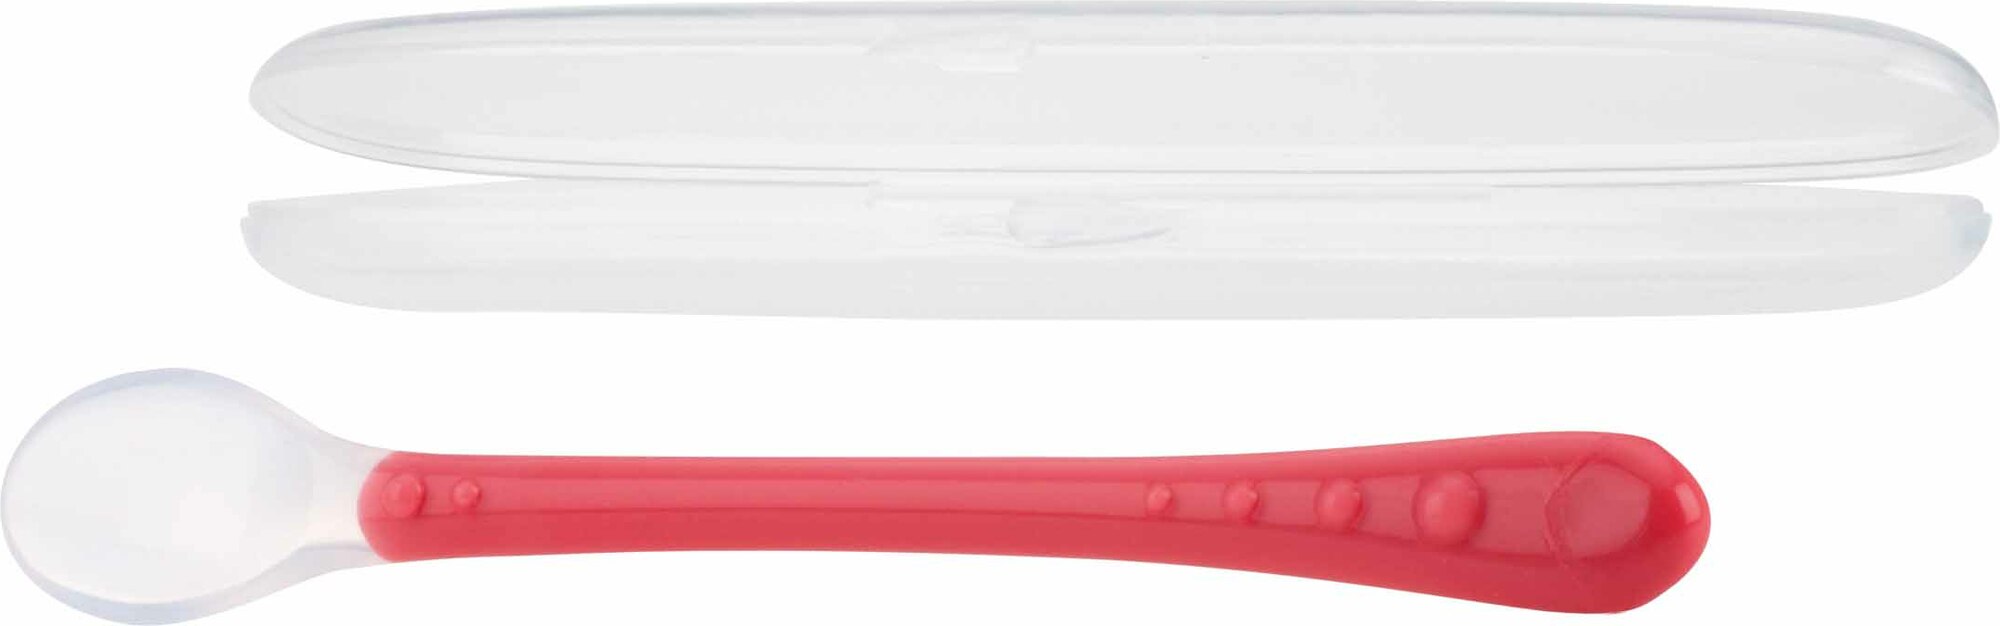 NUBY Lžička silikon s dlouhou rukojetí as obalem 1 ks, 6 m+, červená